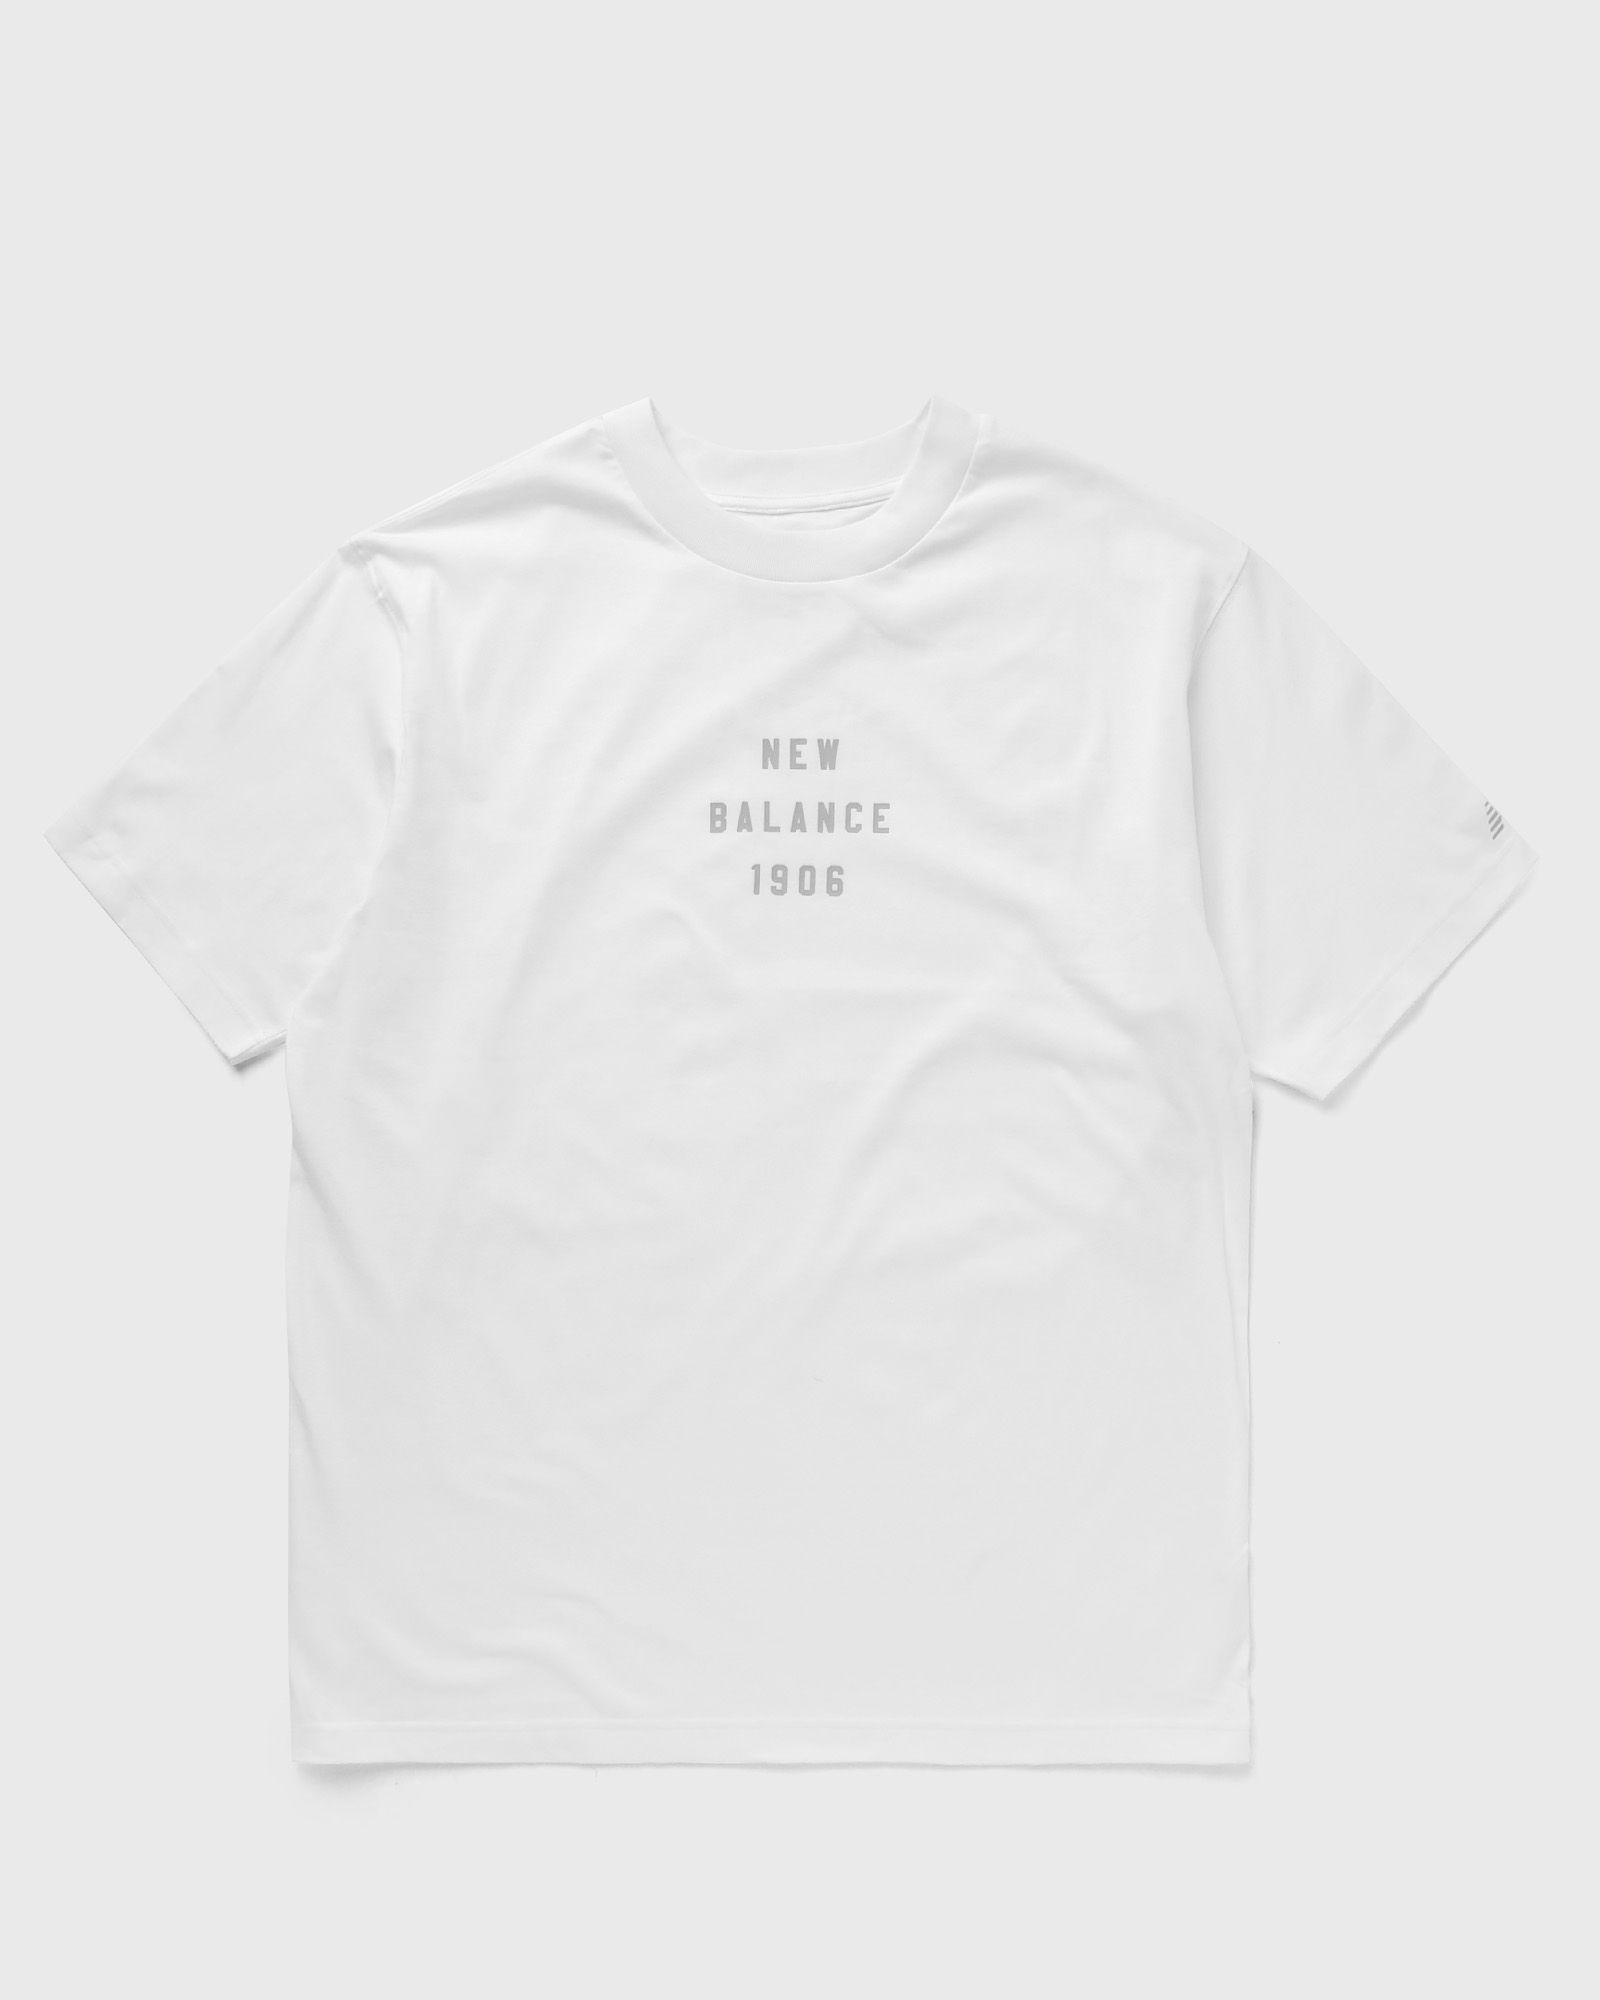 New Balance - graphic t-shirt men shortsleeves white in größe:l